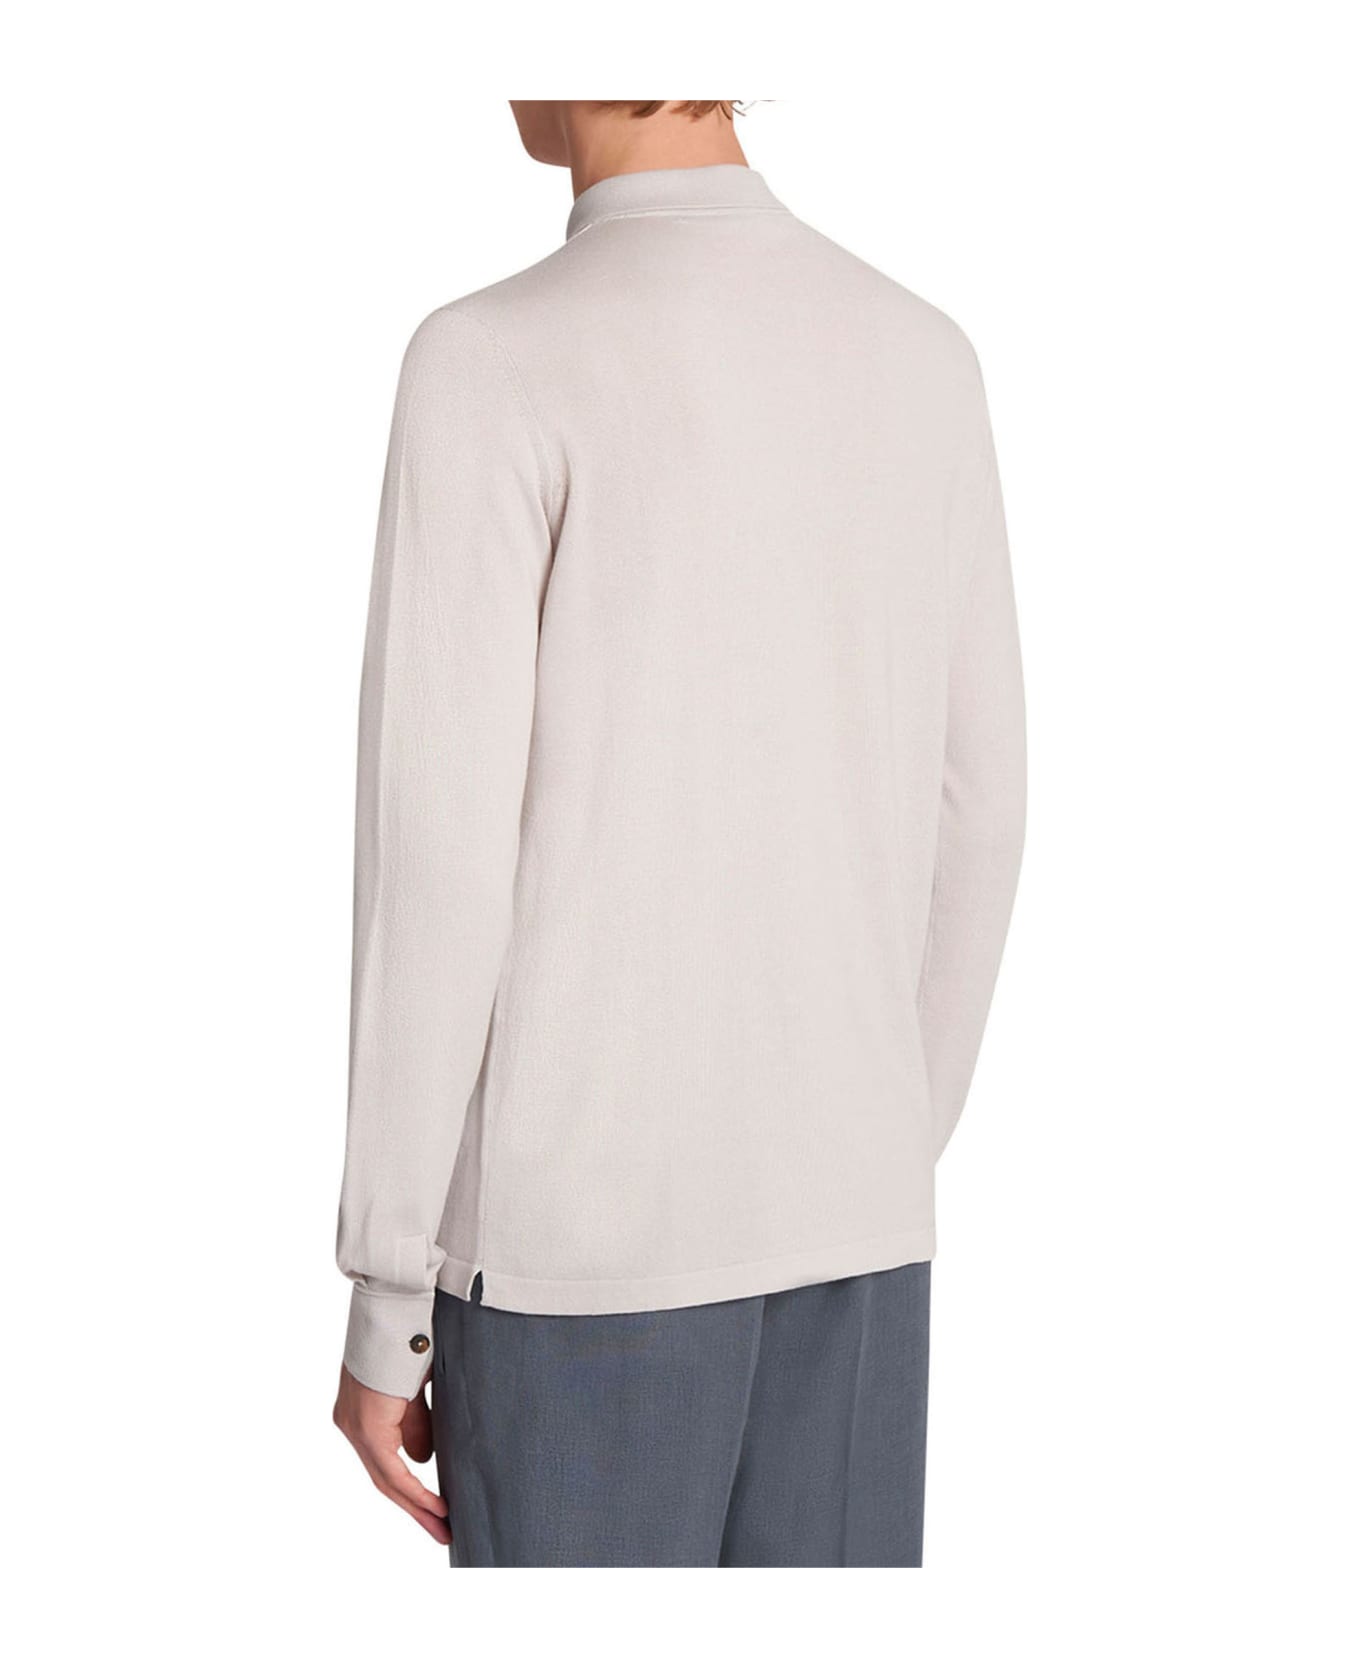 Kiton Jersey Poloshirt L/s Cotton - ICE/MILKWHITE ポロシャツ